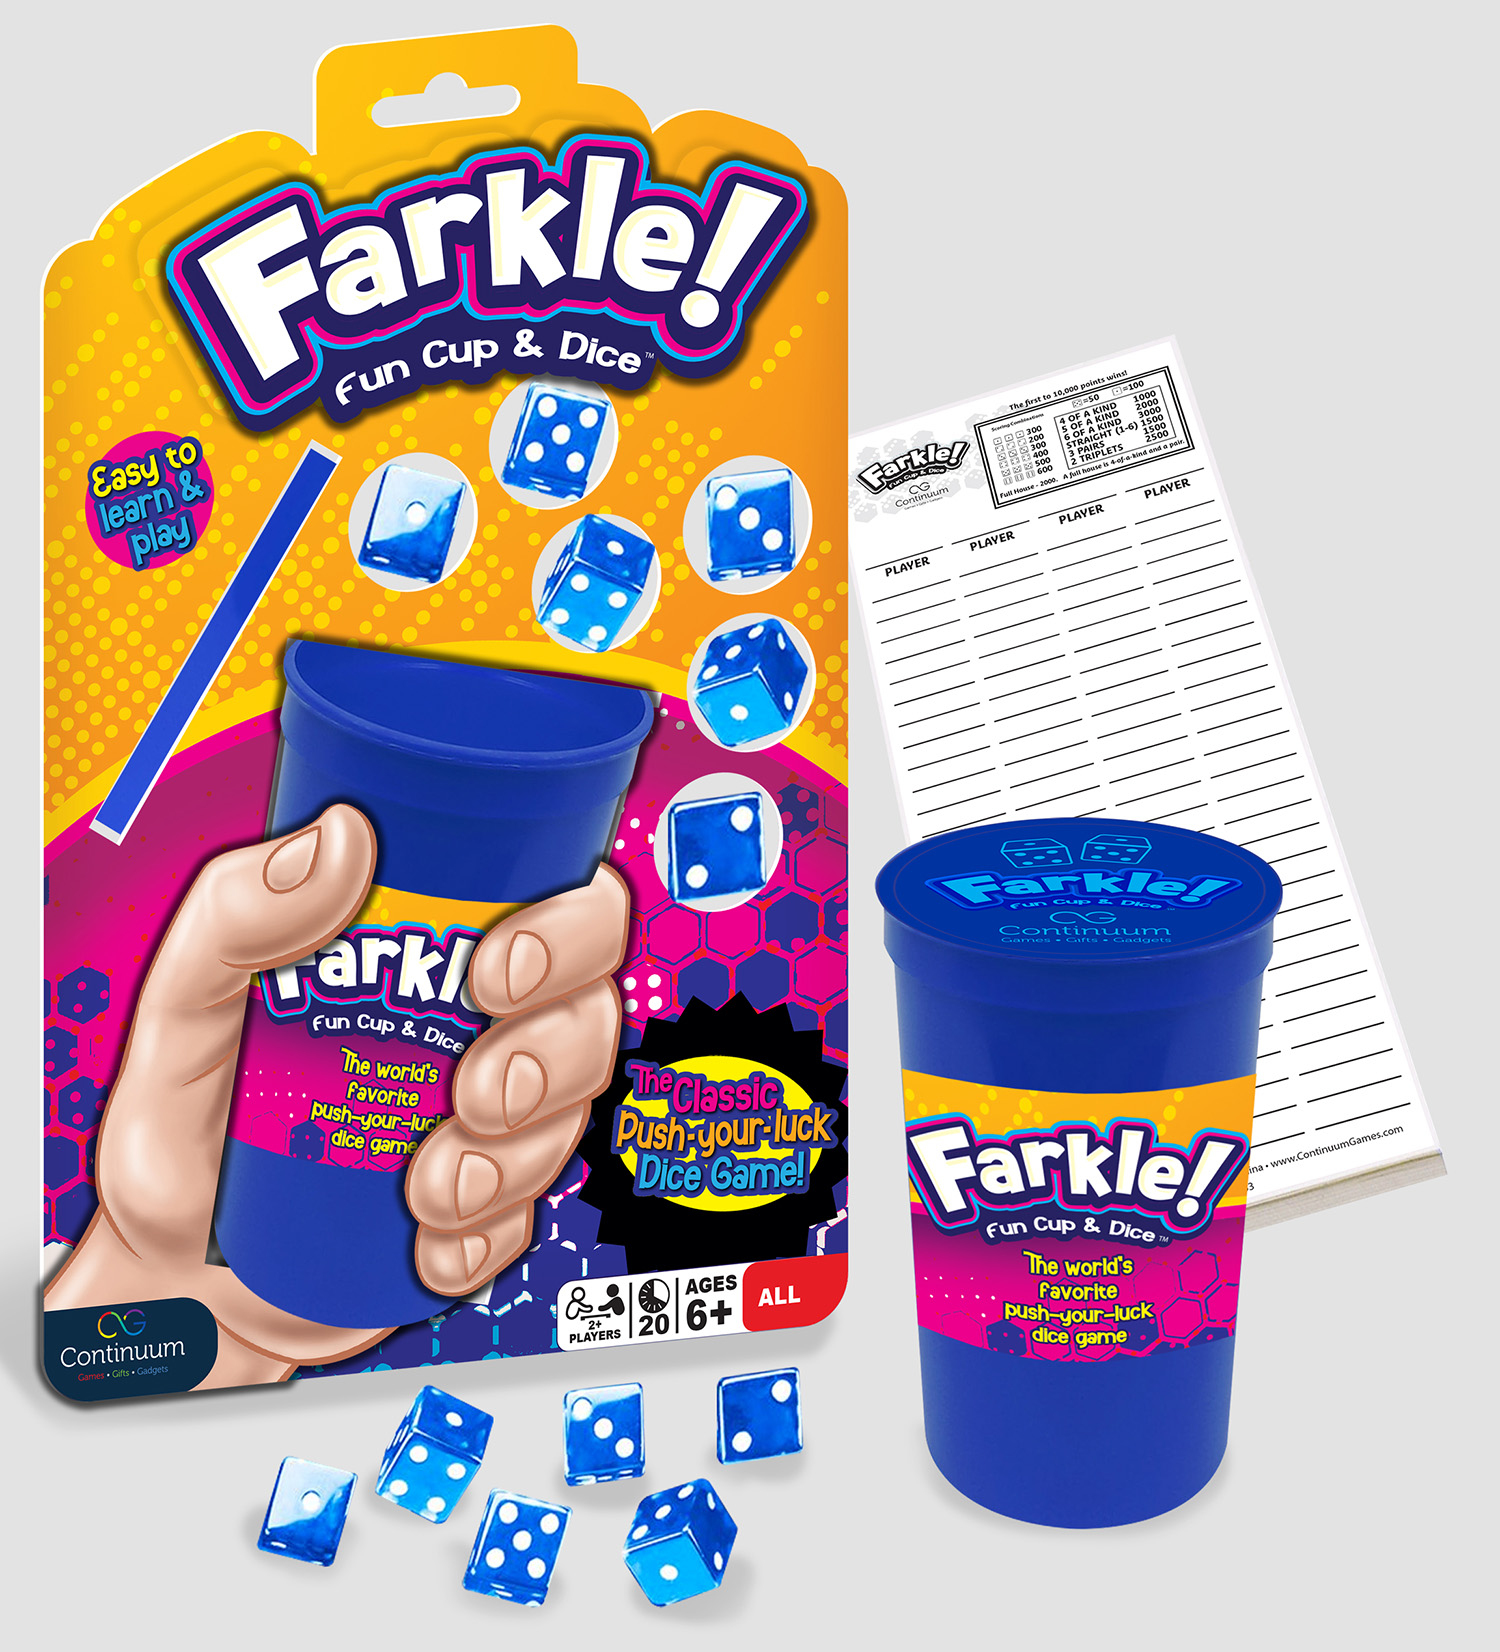 Farkle! Fun Cup & Dice